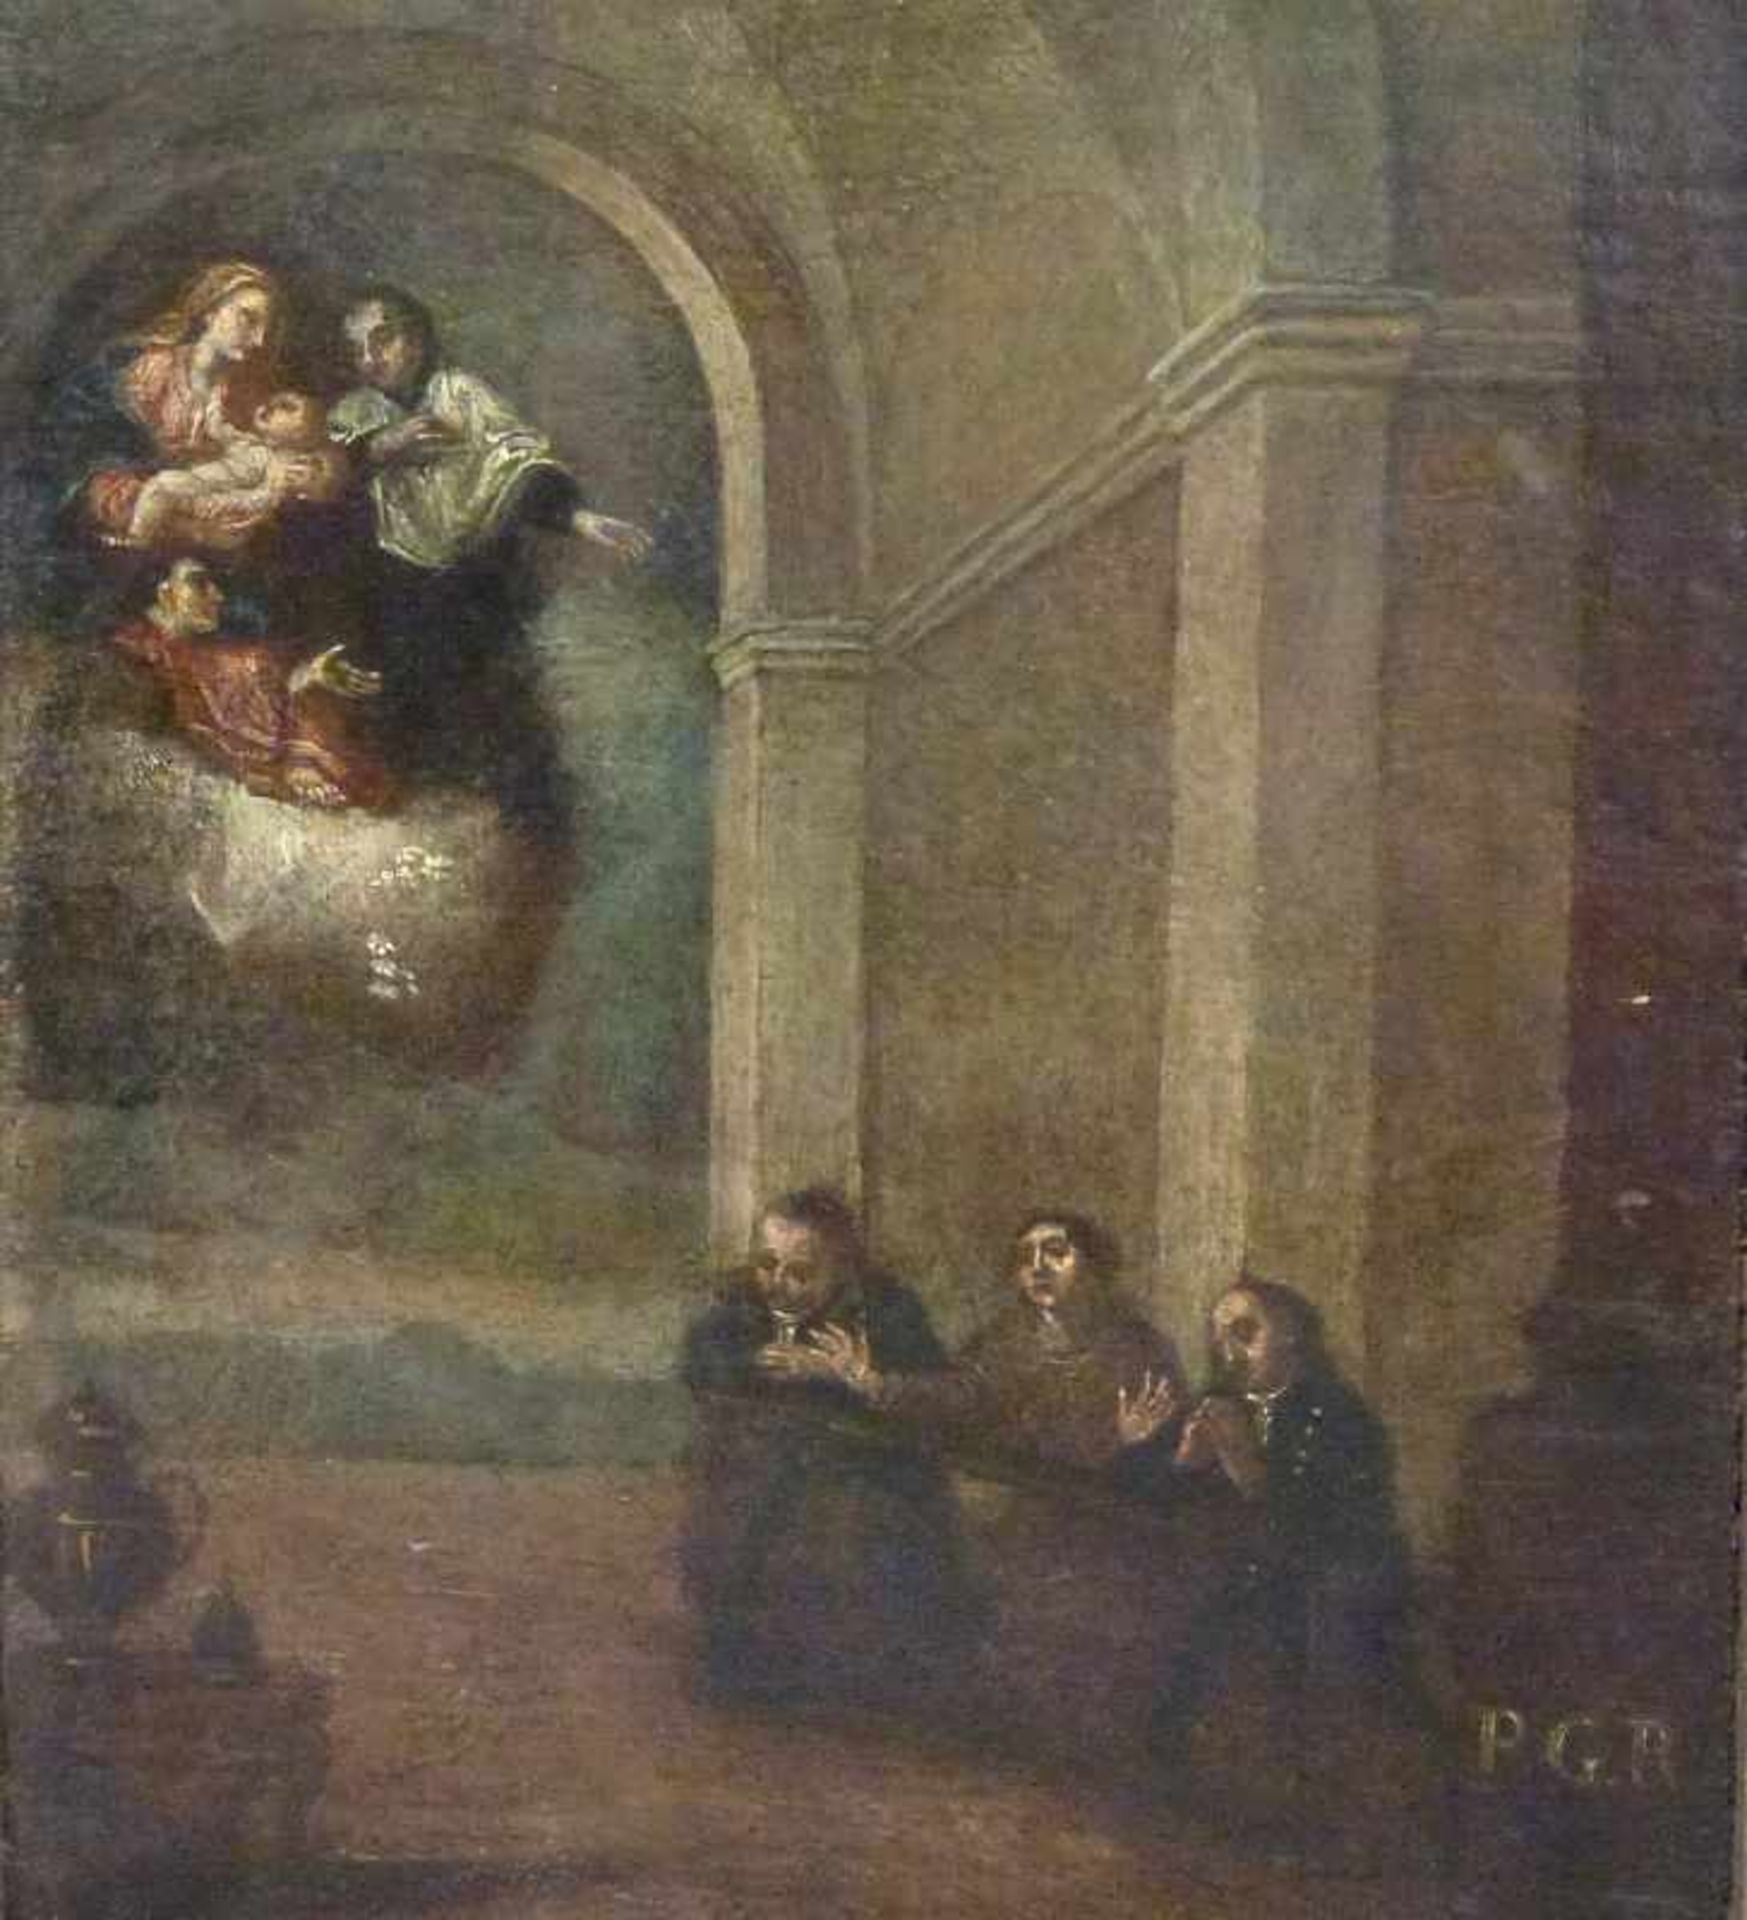 Votivbild, 19.Jh. Öl/Holz, in Kirche Betende und Flehende, Maria mit Jesuskind in Wolken, Monogr.: